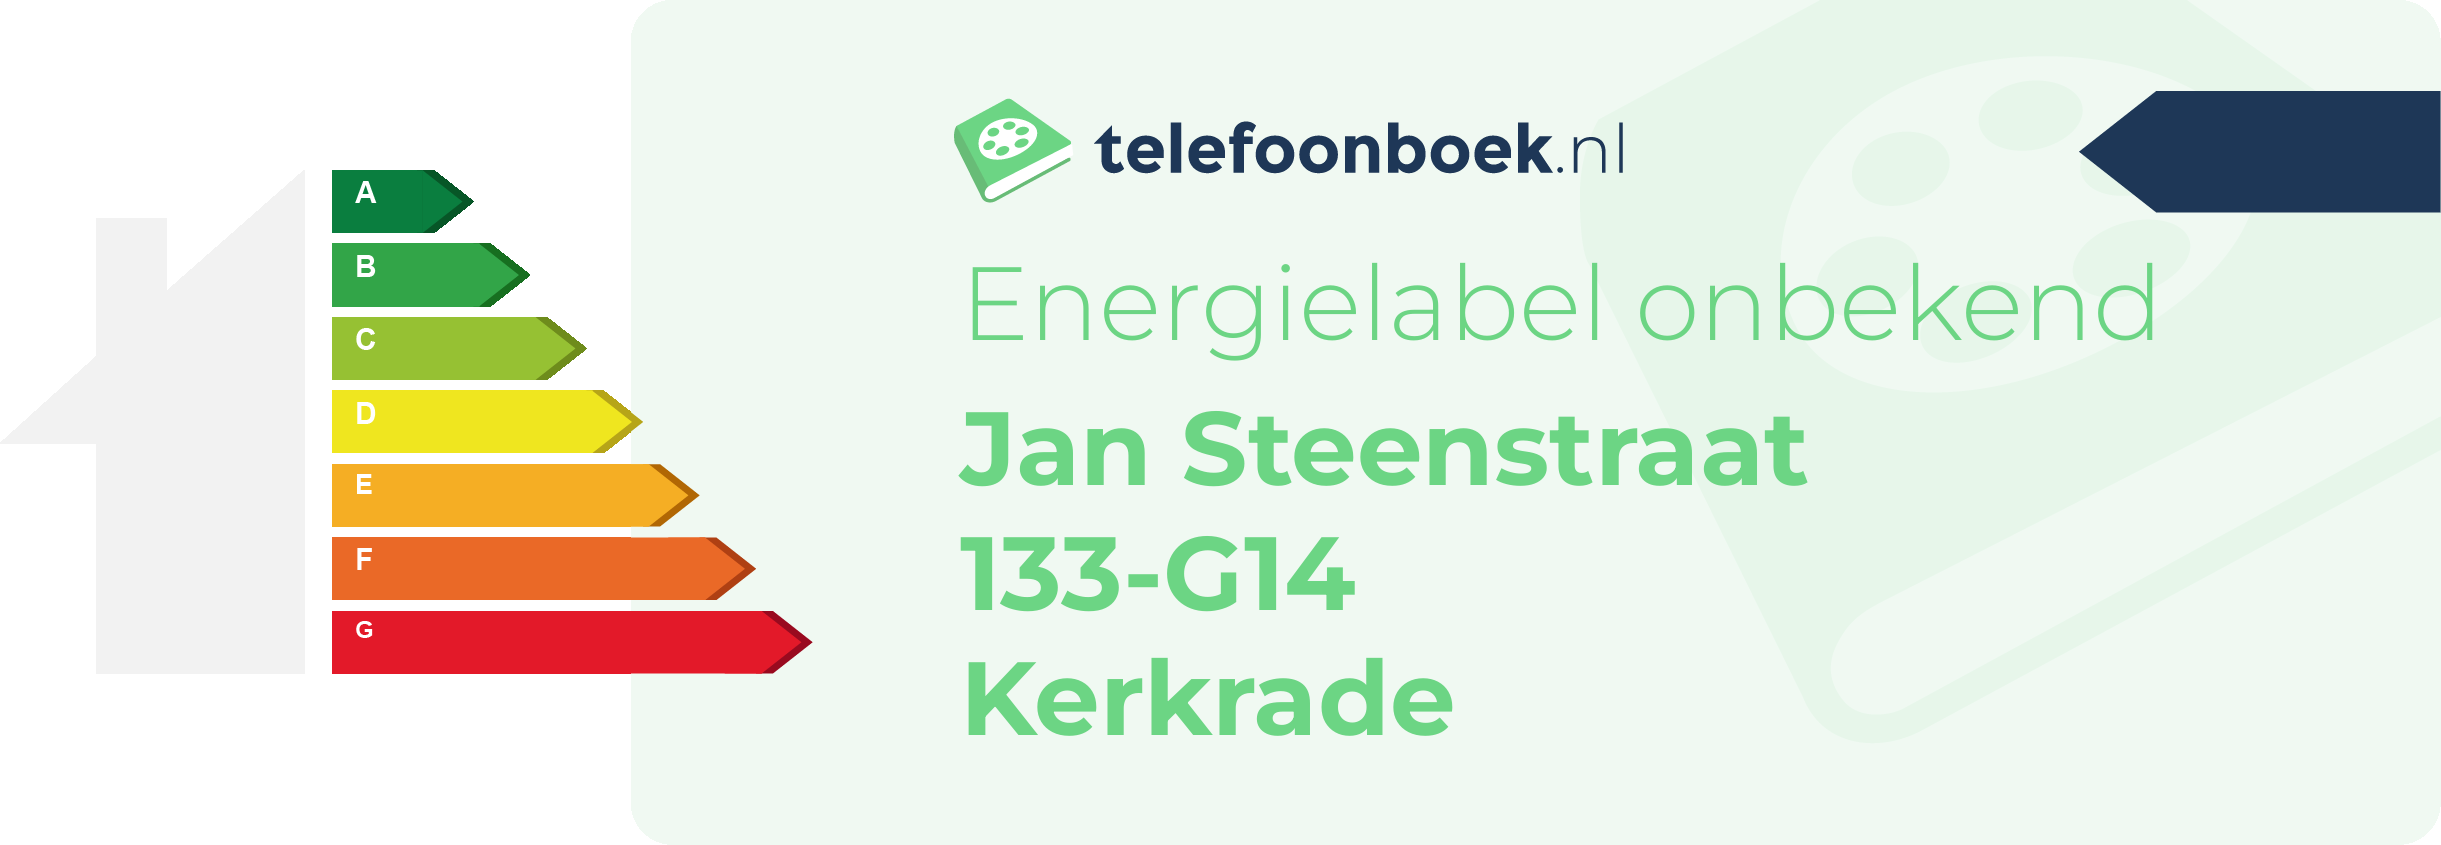 Energielabel Jan Steenstraat 133-G14 Kerkrade